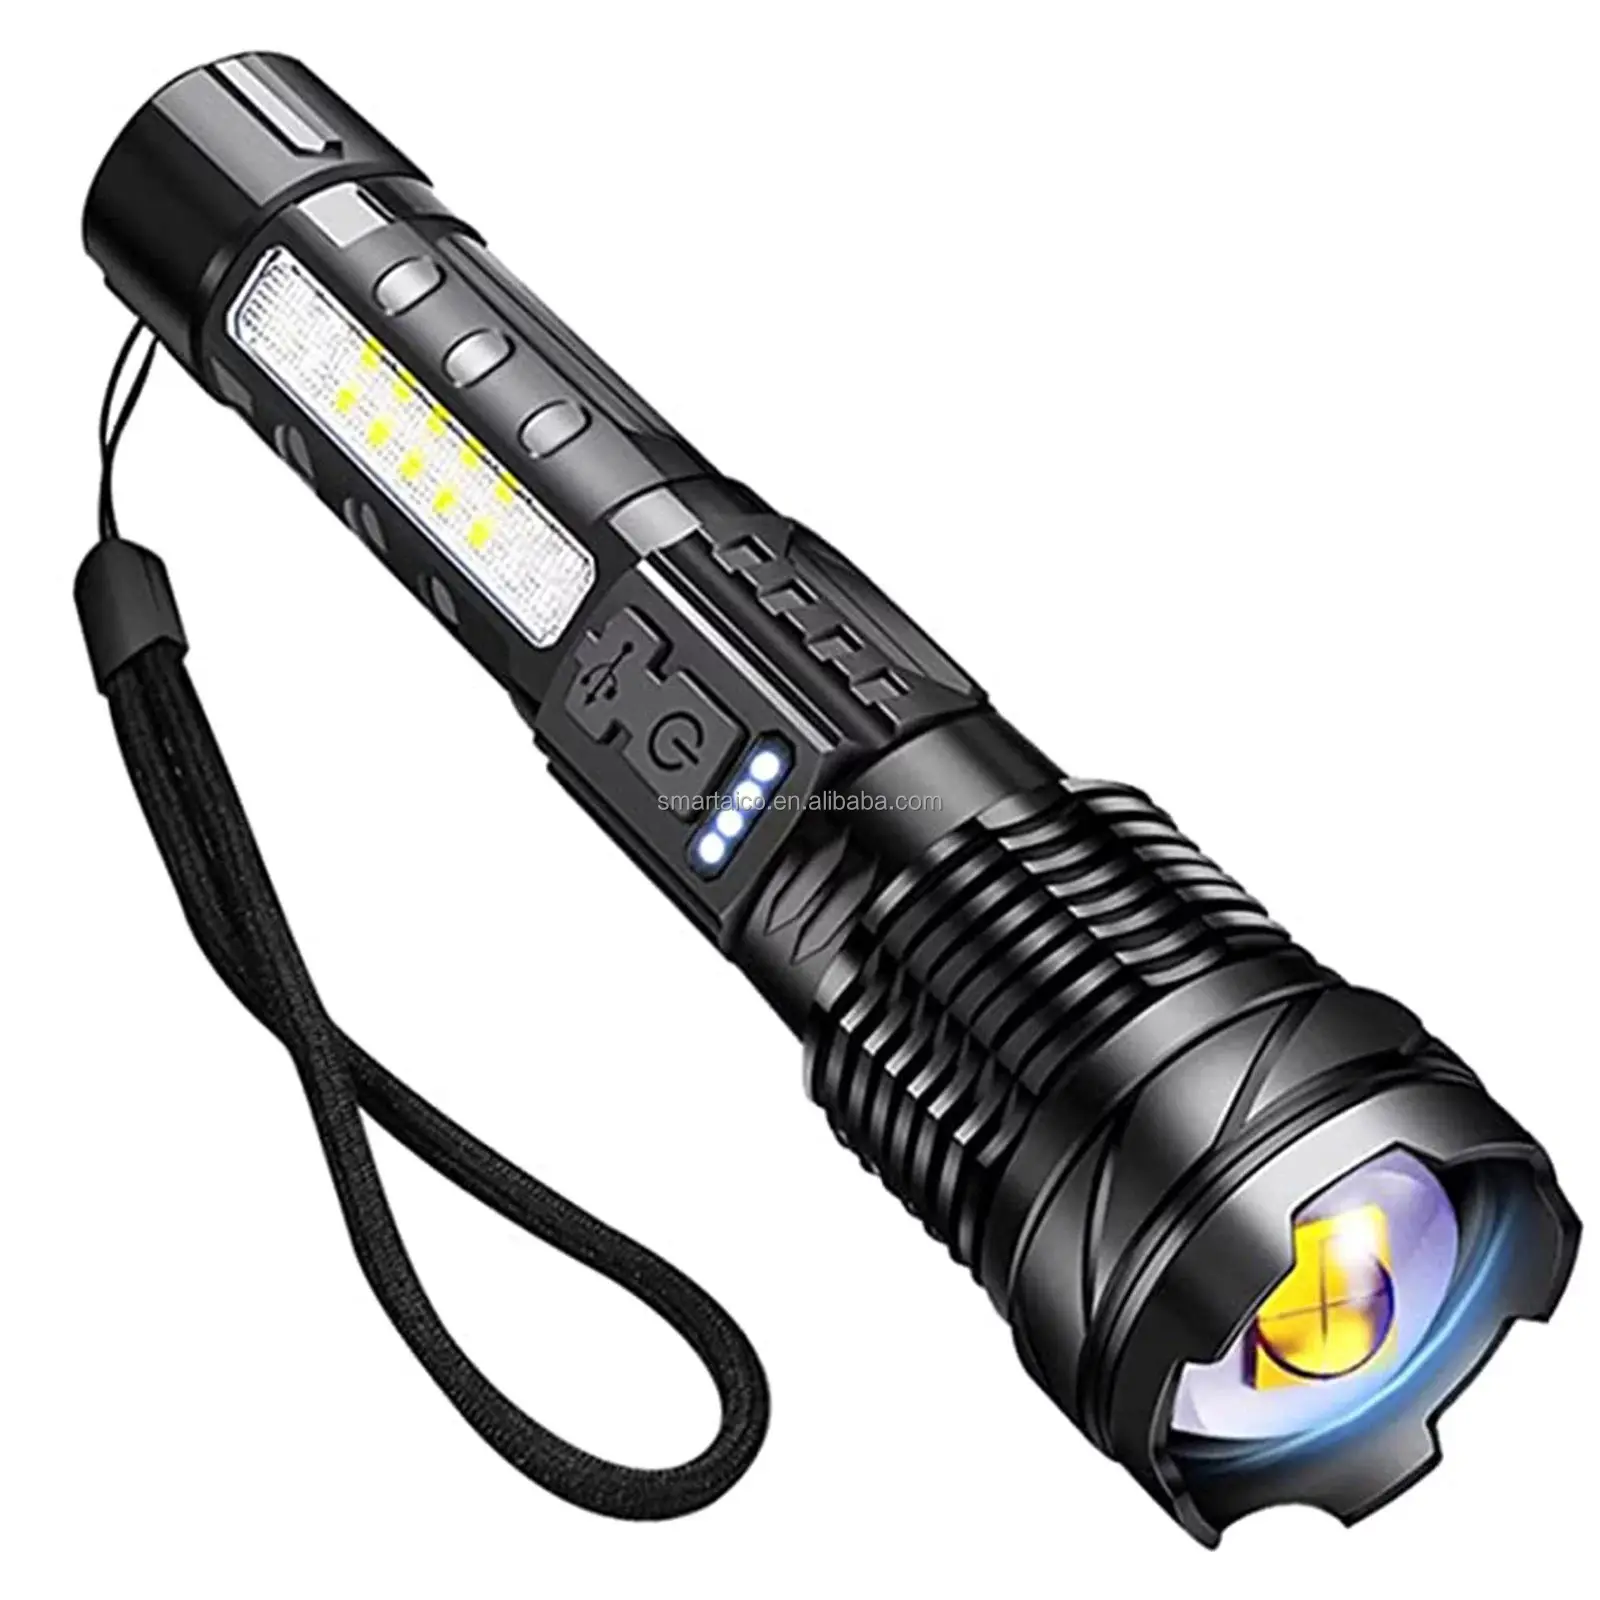 2000 Lumen Super Brilhante Led Lanterna Alta Lumens Recarregável com 8 Modos de Iluminação Mão Flash Light 10 Industrial 90 DC 5V 95